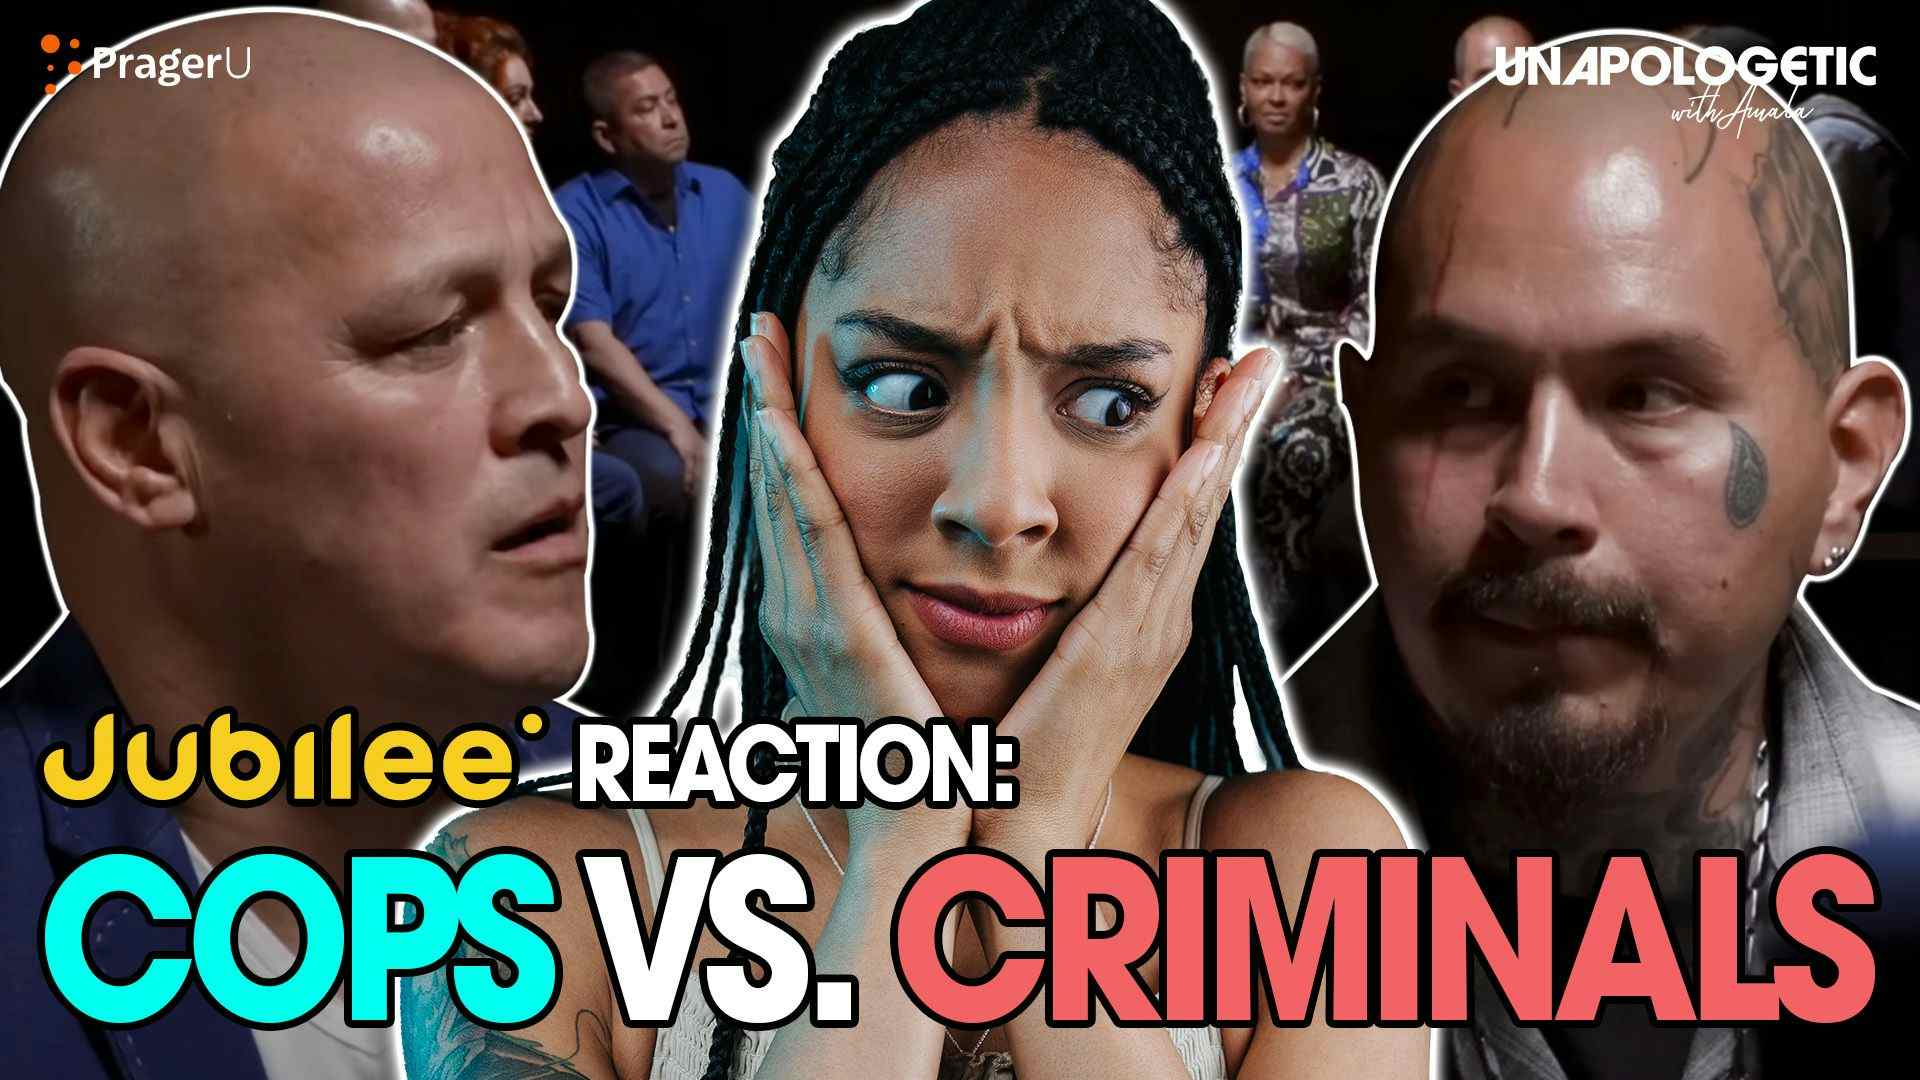 Jubilee Reaction: Criminals vs. Cops